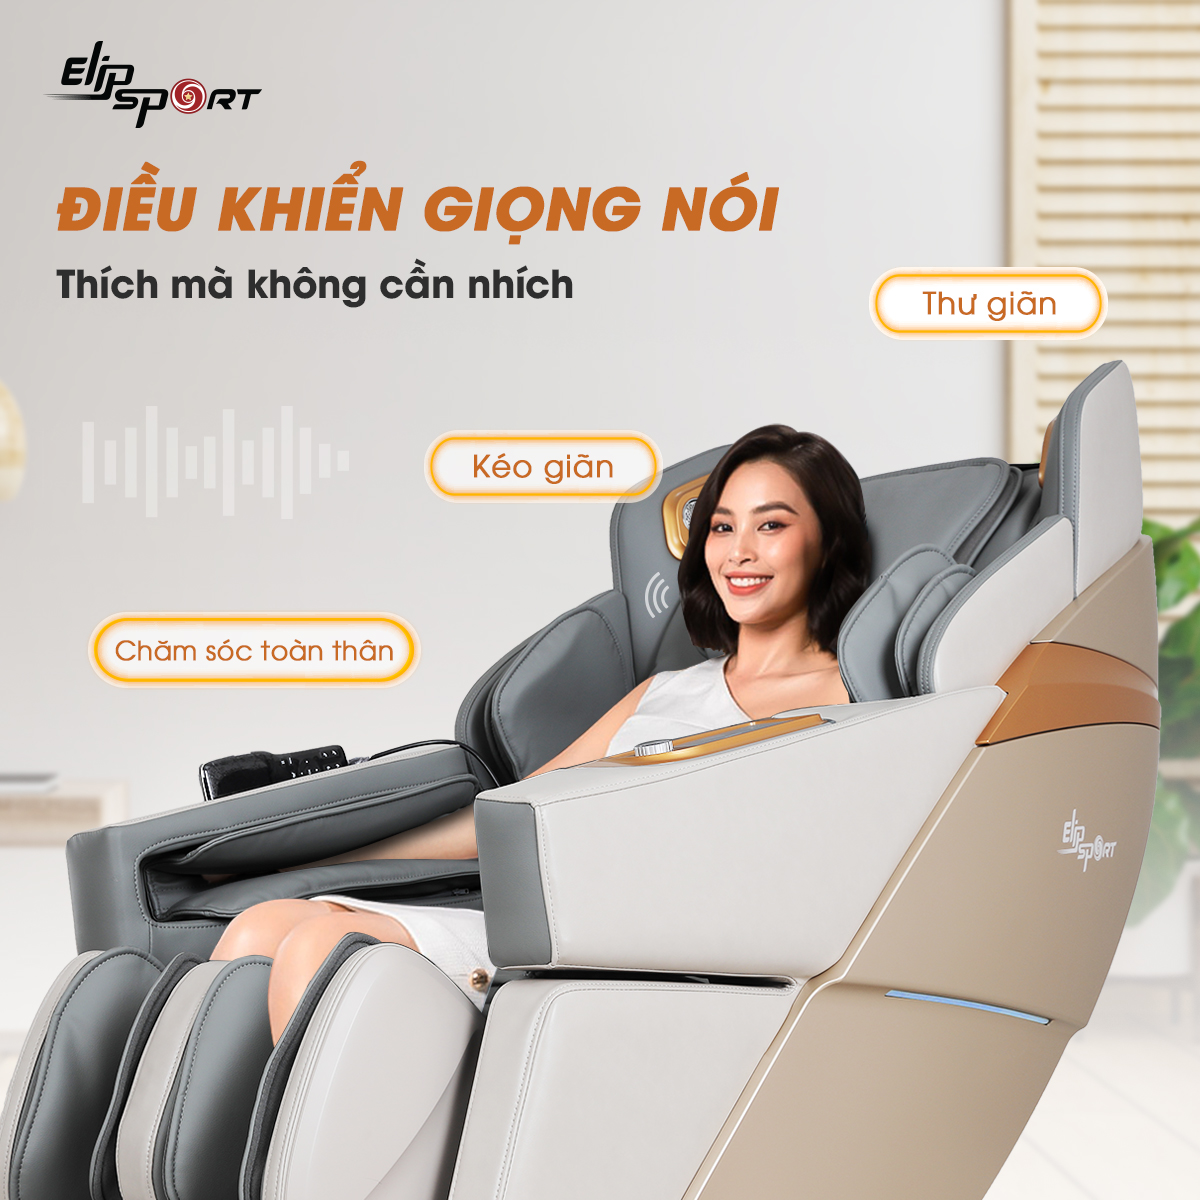 ghế massage elipsport điều khiển bằng giọng nói